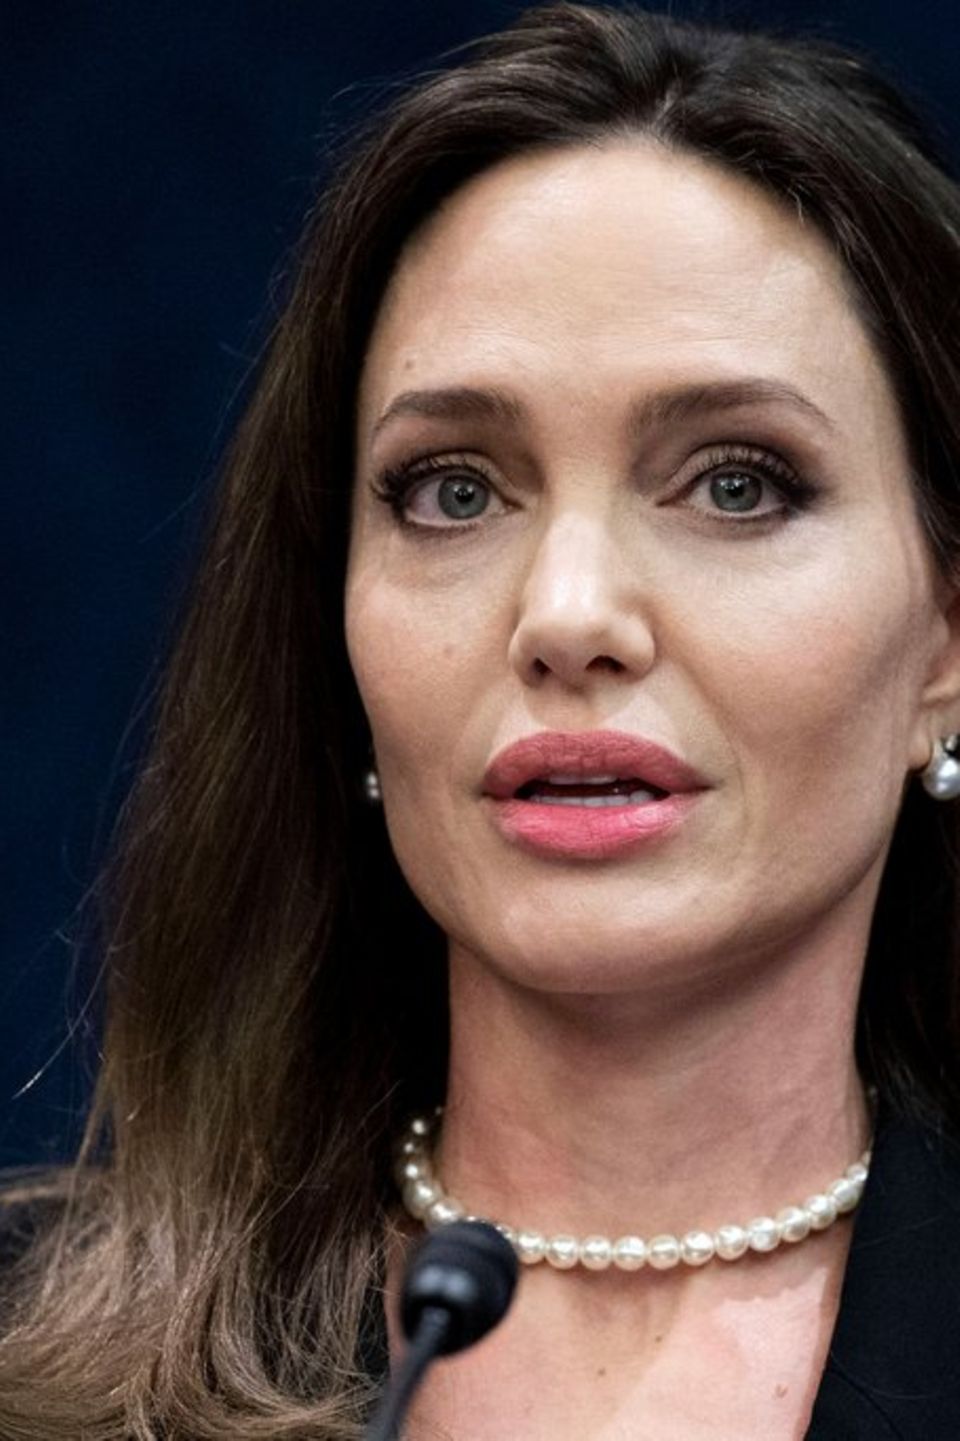 Angelina Jolie nimmt Stellung zum Nahostkonflikt.